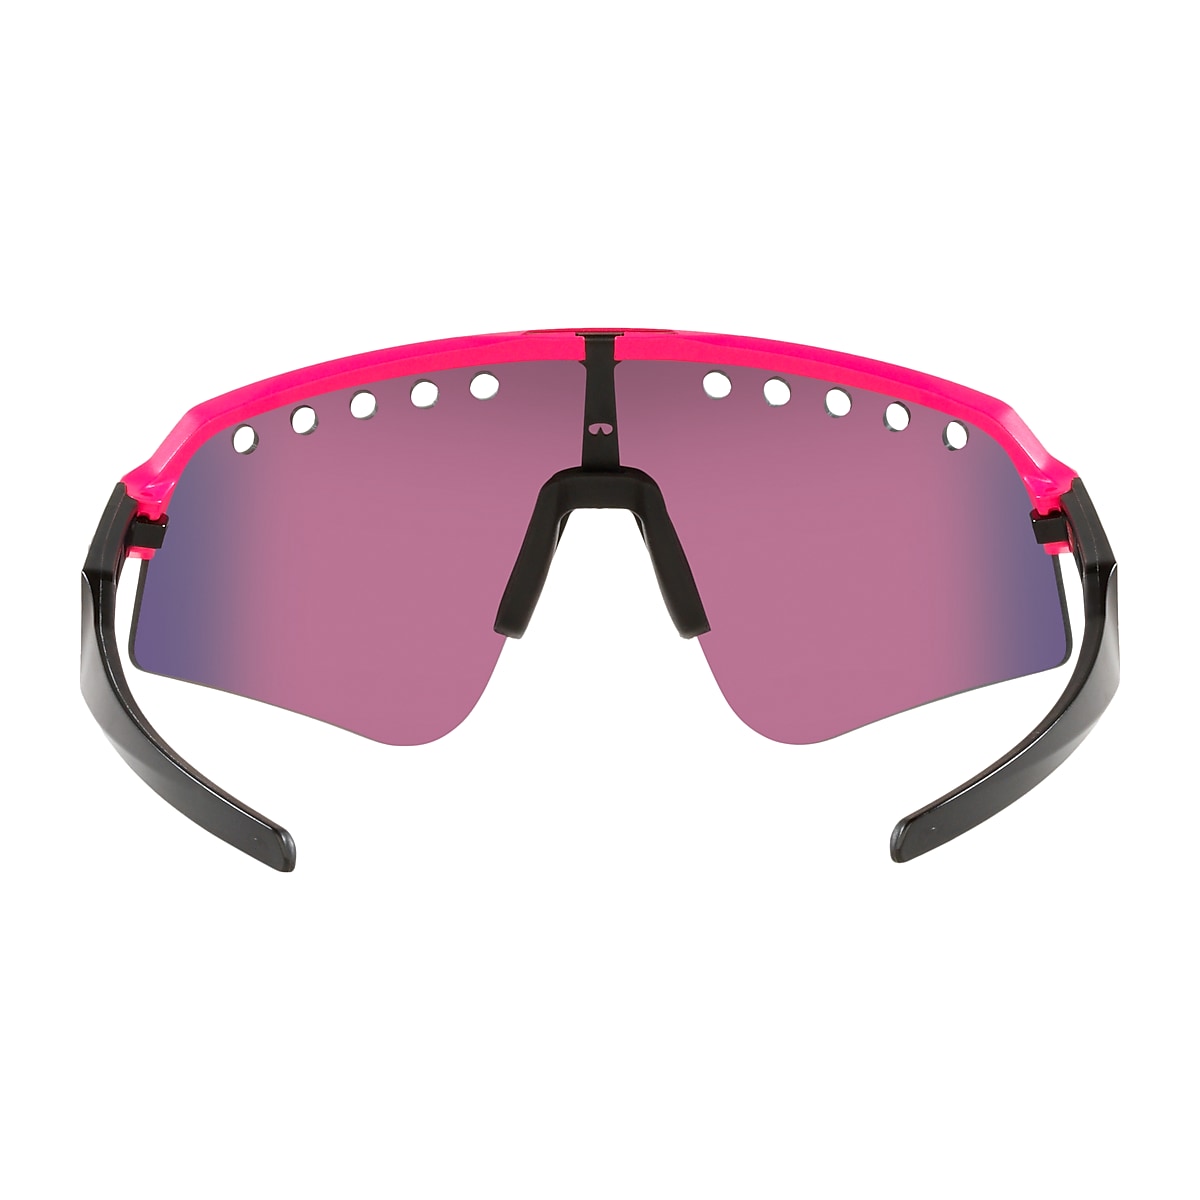 Aprender acerca 60+ imagen oakley glasses pink